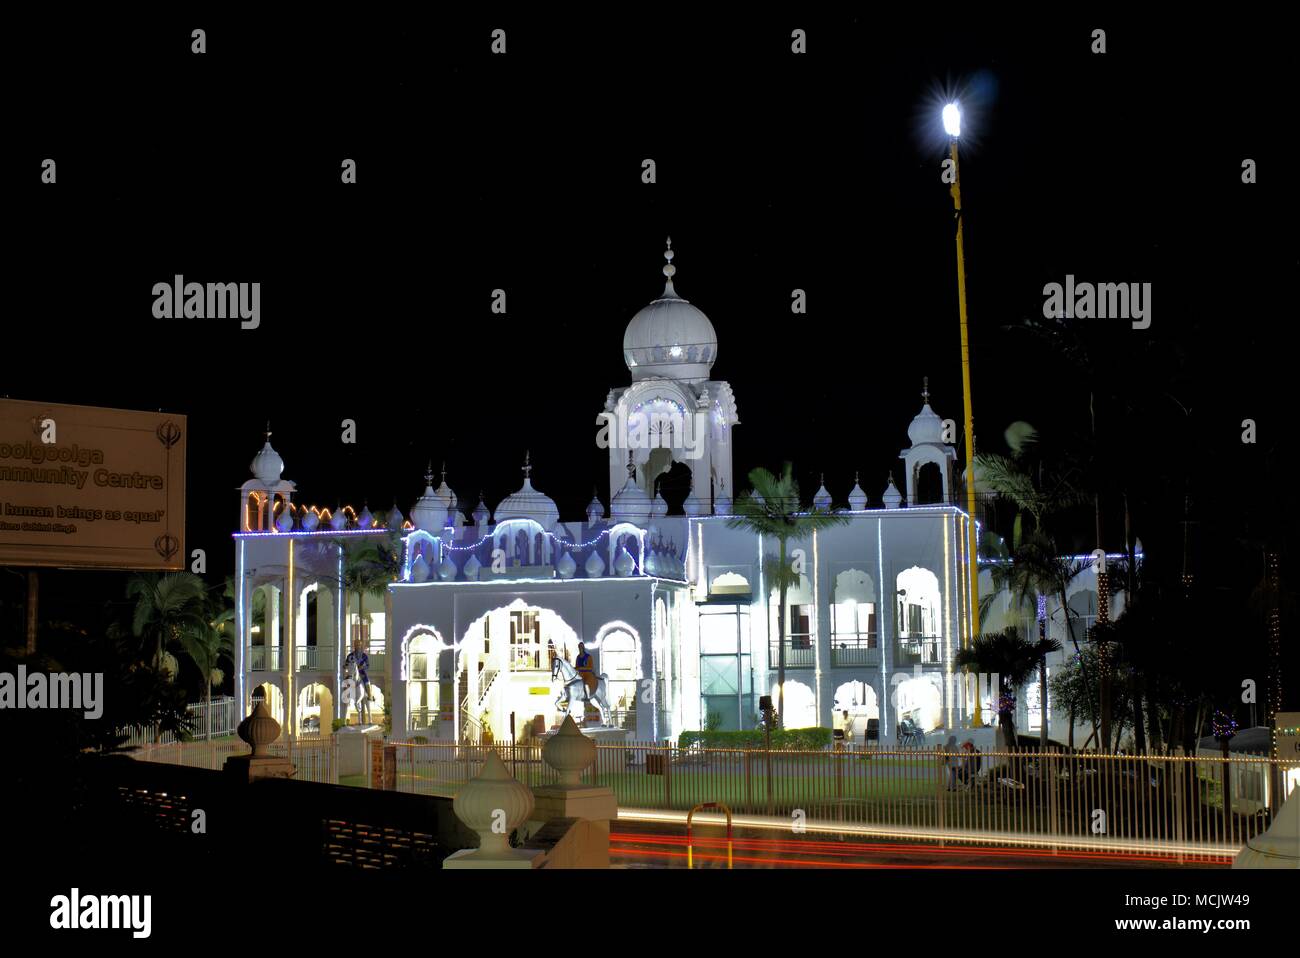 Illuminated Sikh temple for Baisakhi celebrations. Night image of Sikh temple at Woolgoolga in Australia. Stock Photo